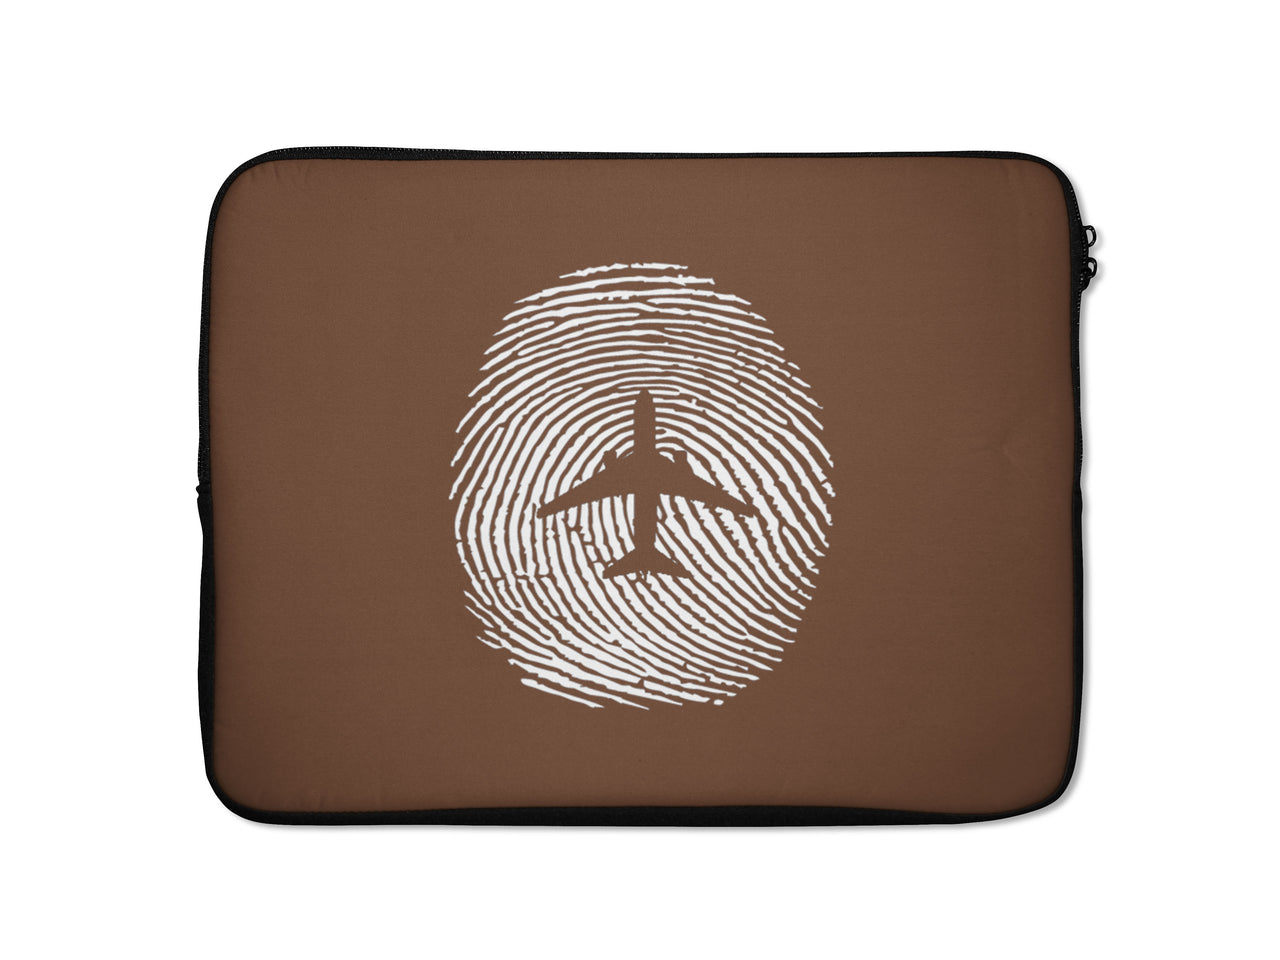 Aviation Finger Print Designed Laptop & Tablet Cases